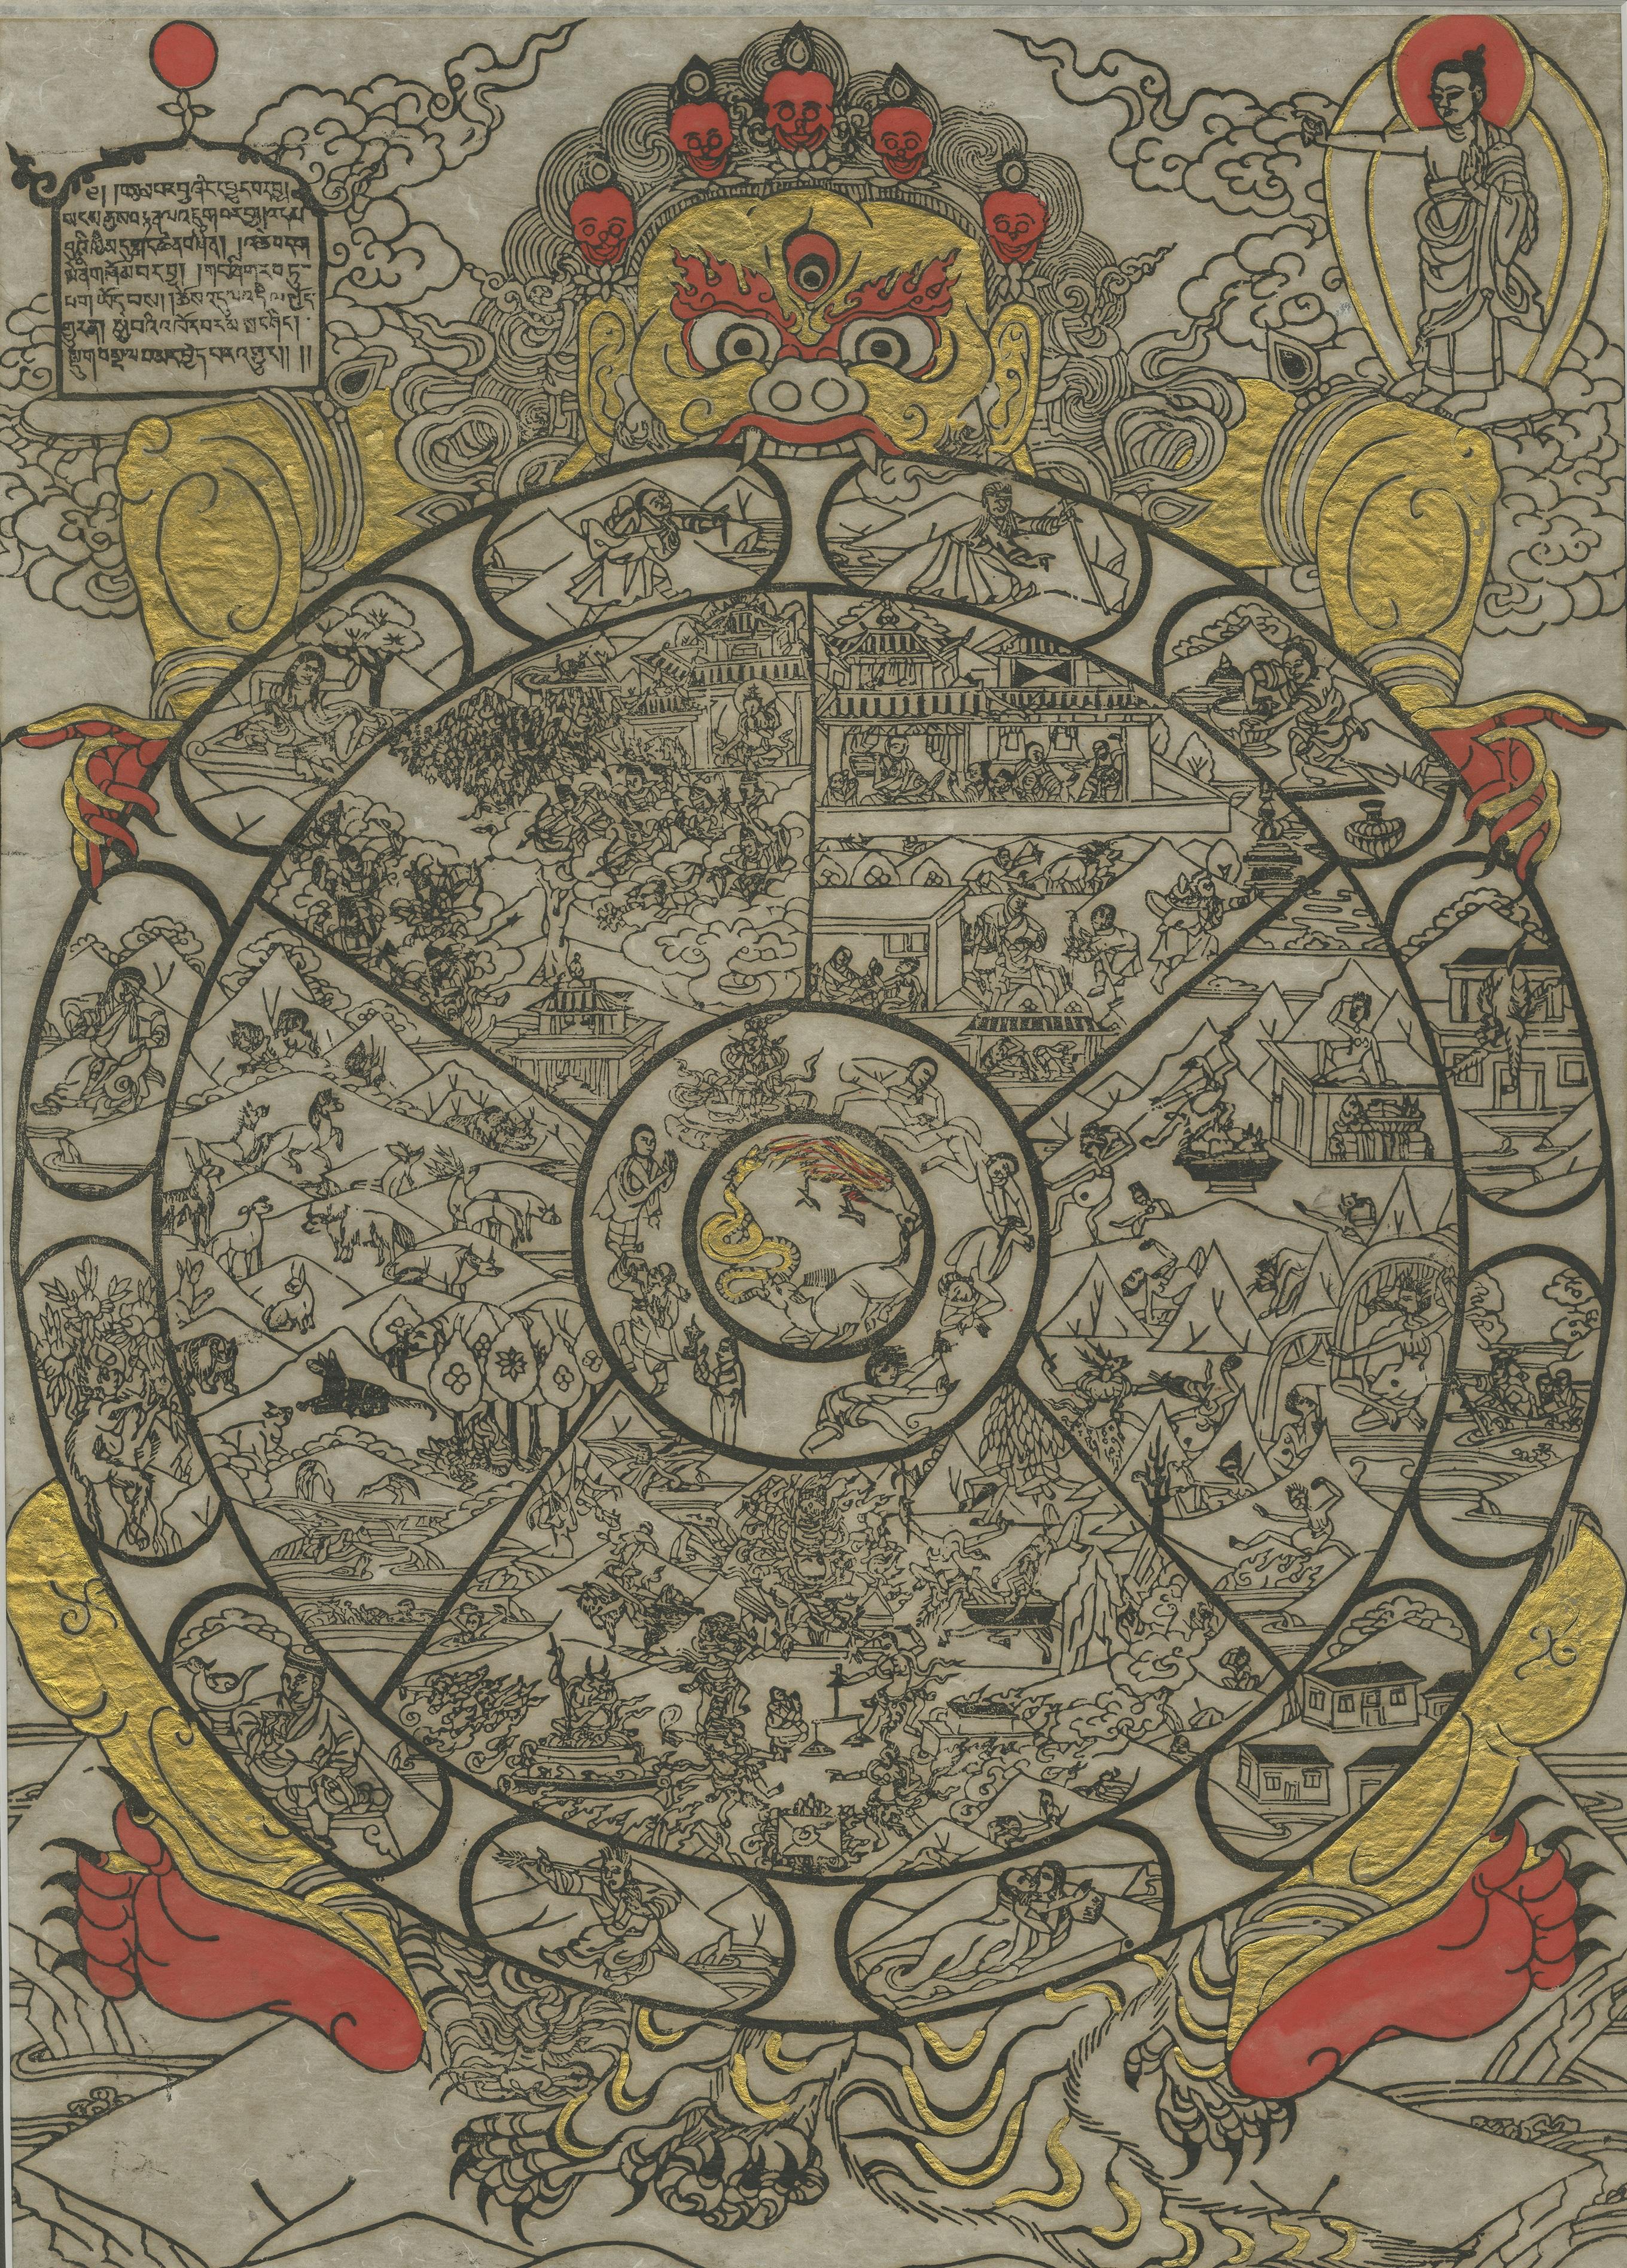 Belle gravure du Bhavachakra, la roue de la vie ou roue du devenir, qui est un mandala - une image complexe représentant la vision bouddhiste de l'univers. Pour les bouddhistes, l'existence est un cycle de vie, de mort, de renaissance et de